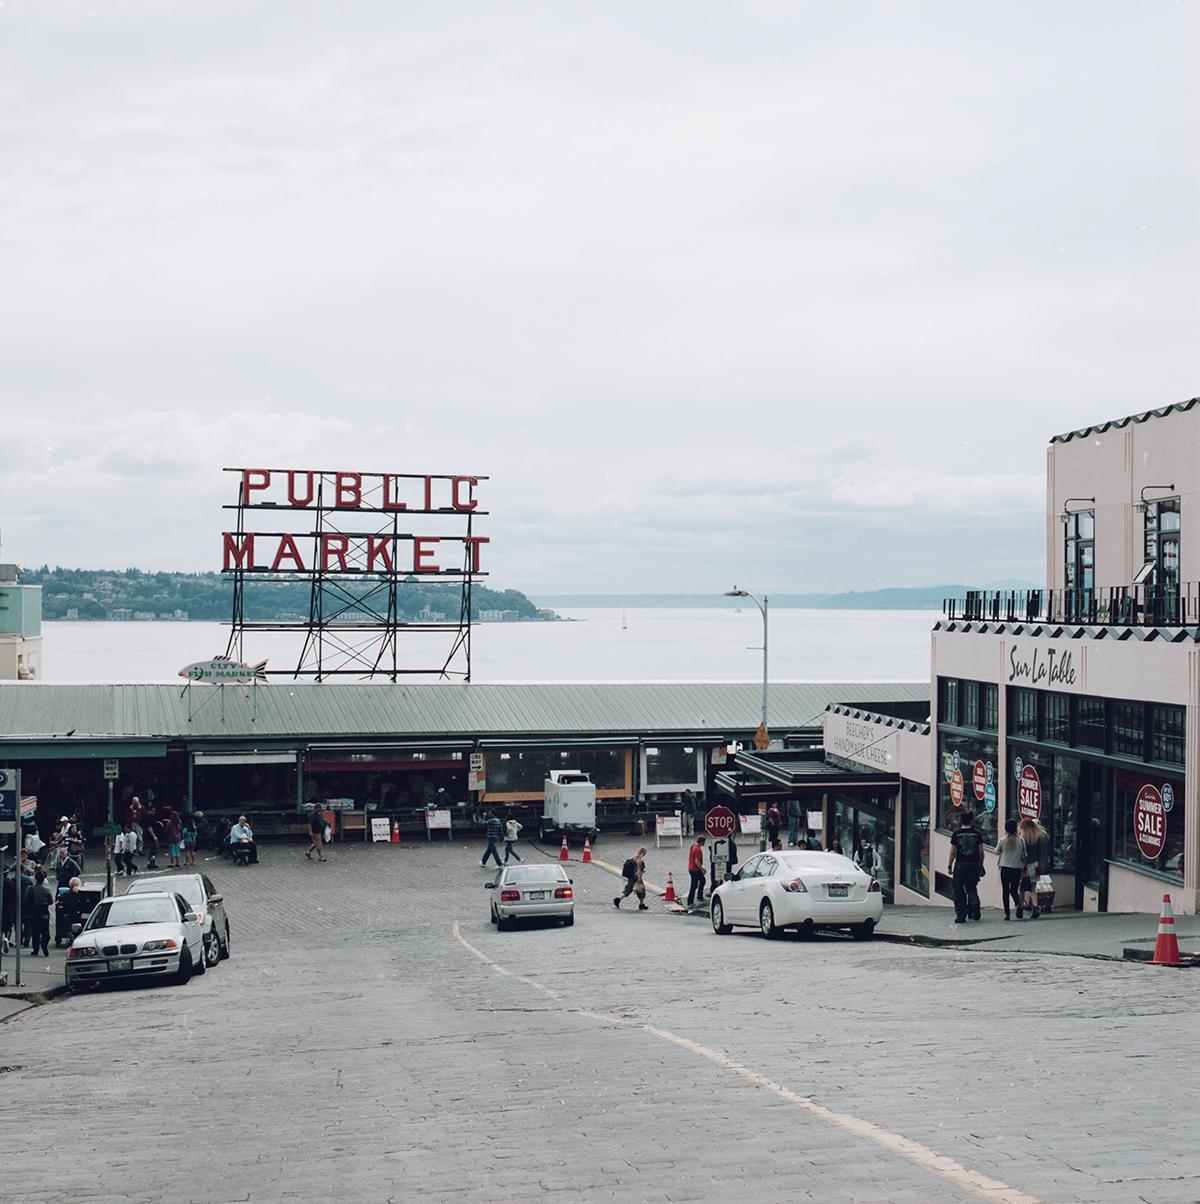 每每从俄勒冈回温哥华途径西雅图，总会去Pike Place的公共市场逛